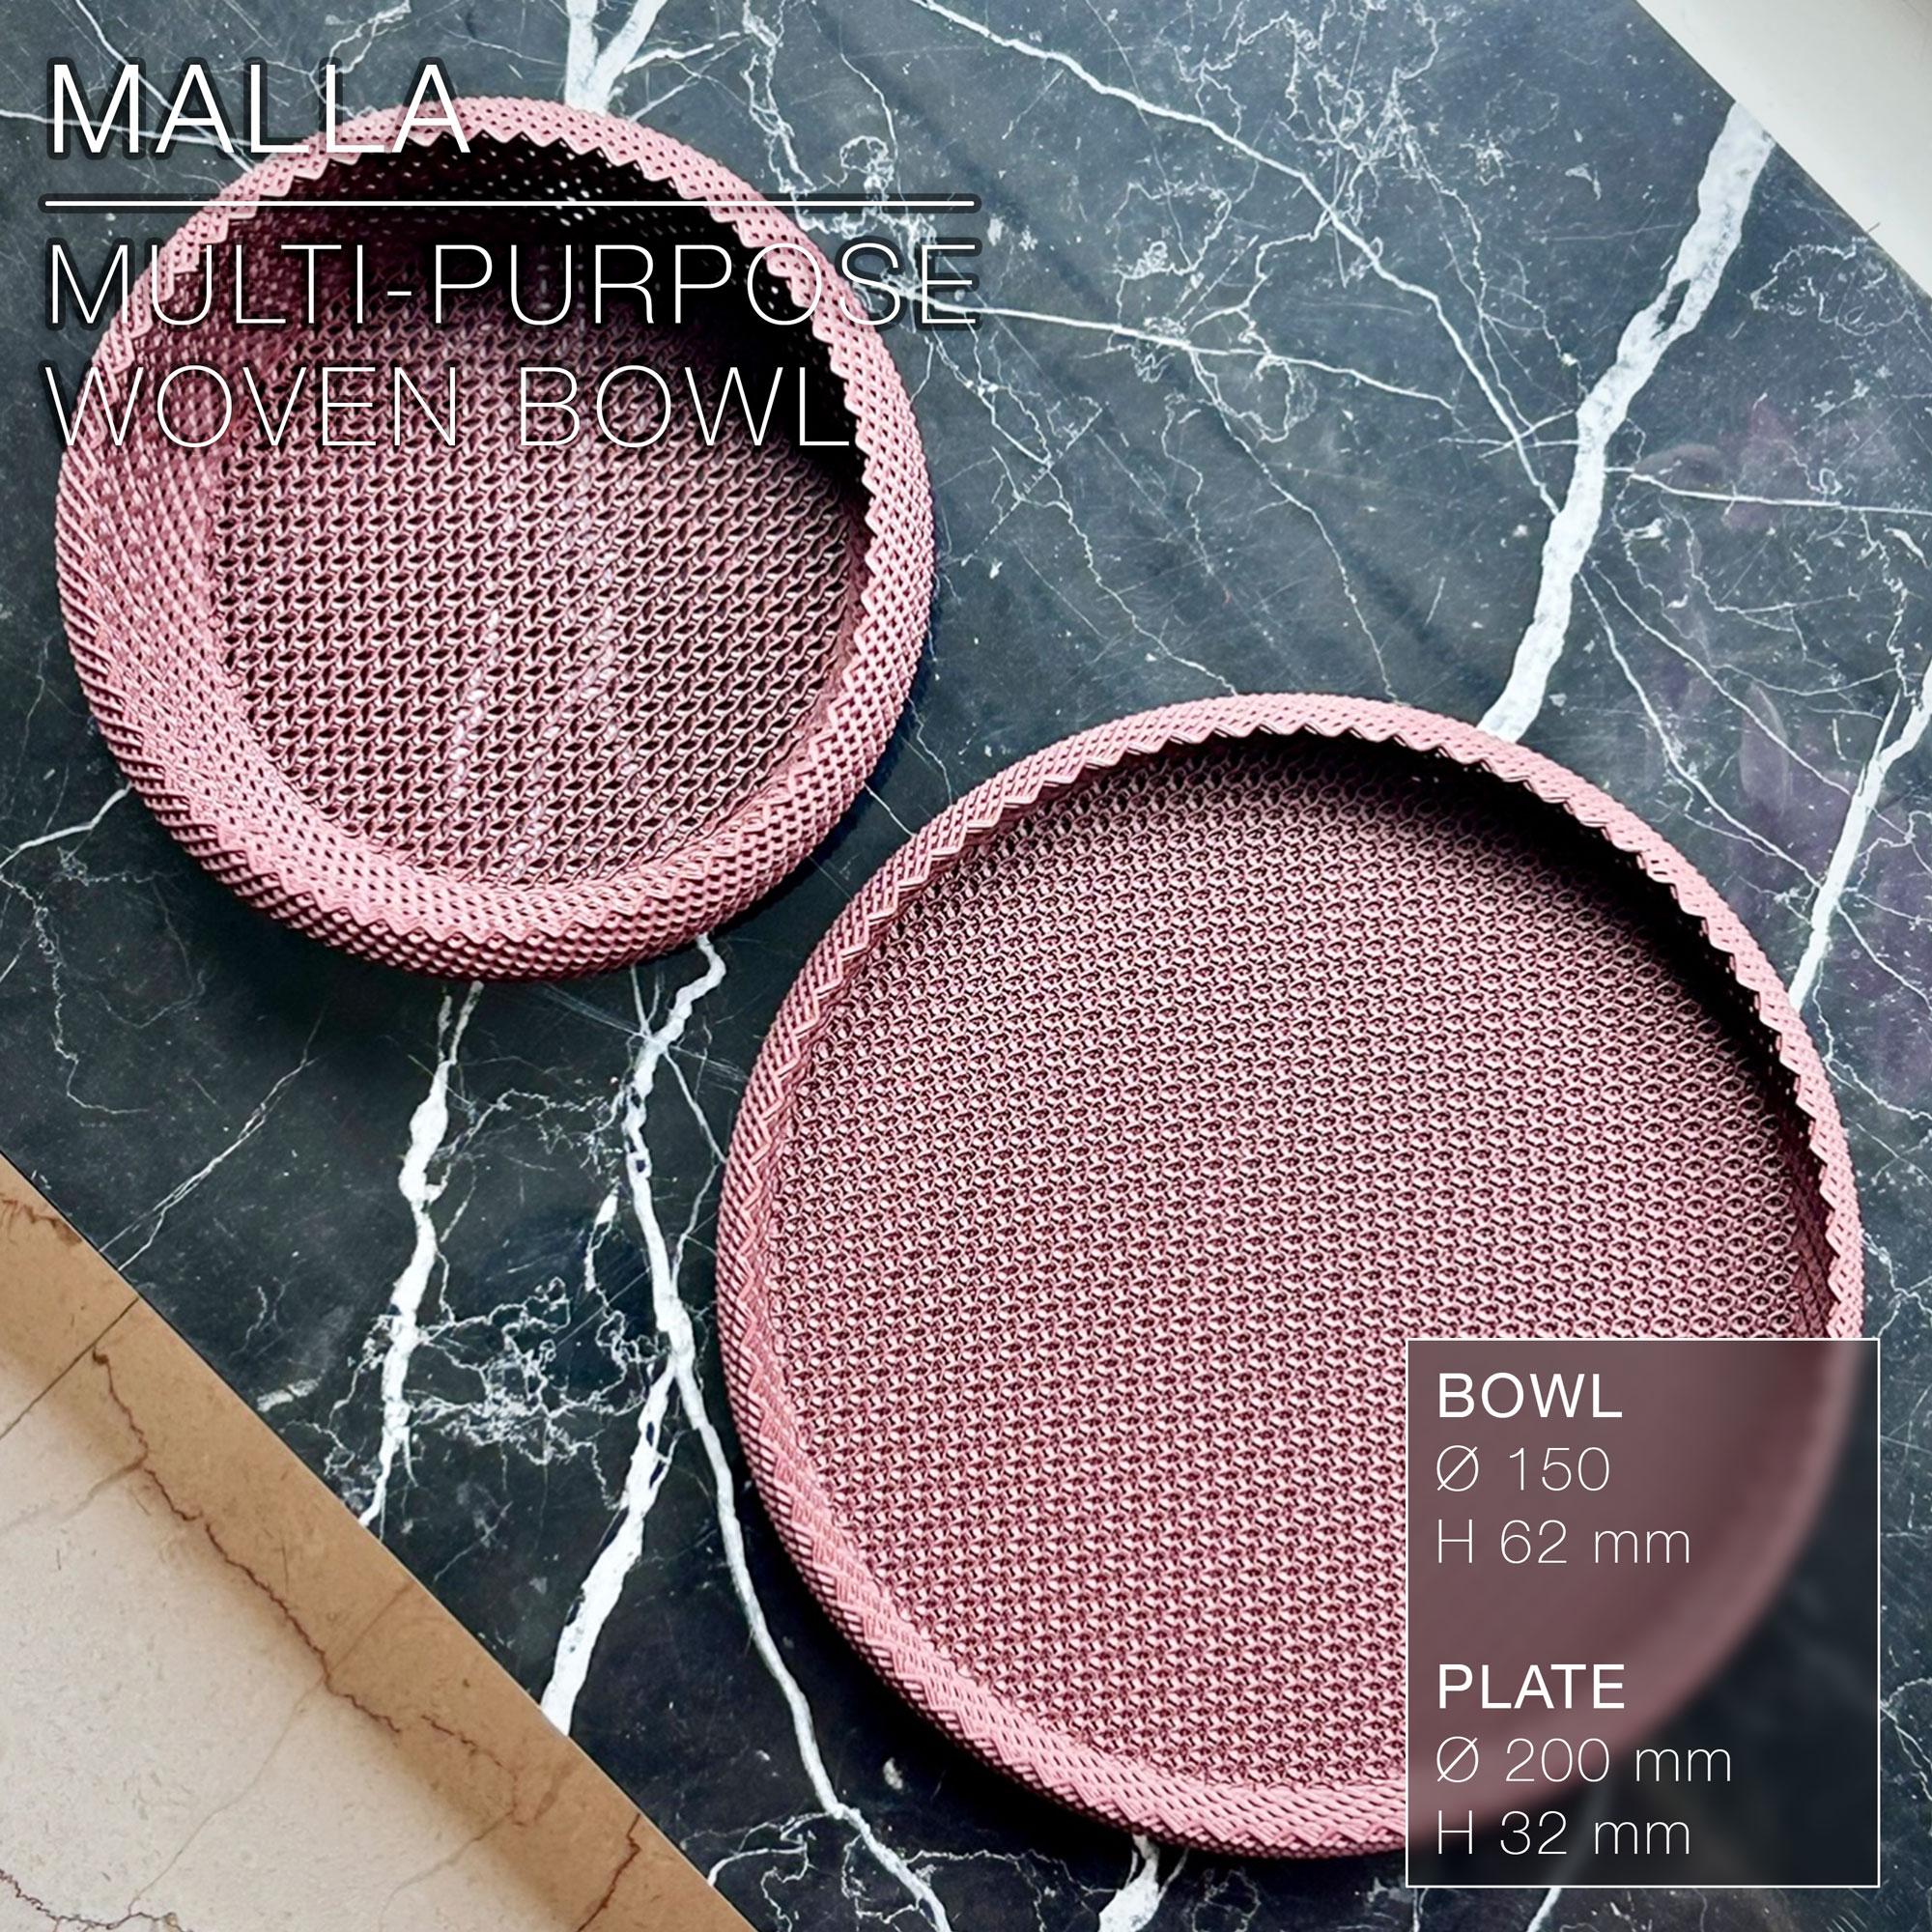 MALLA  |  woven bowl & plate, multi-purpose 3d model